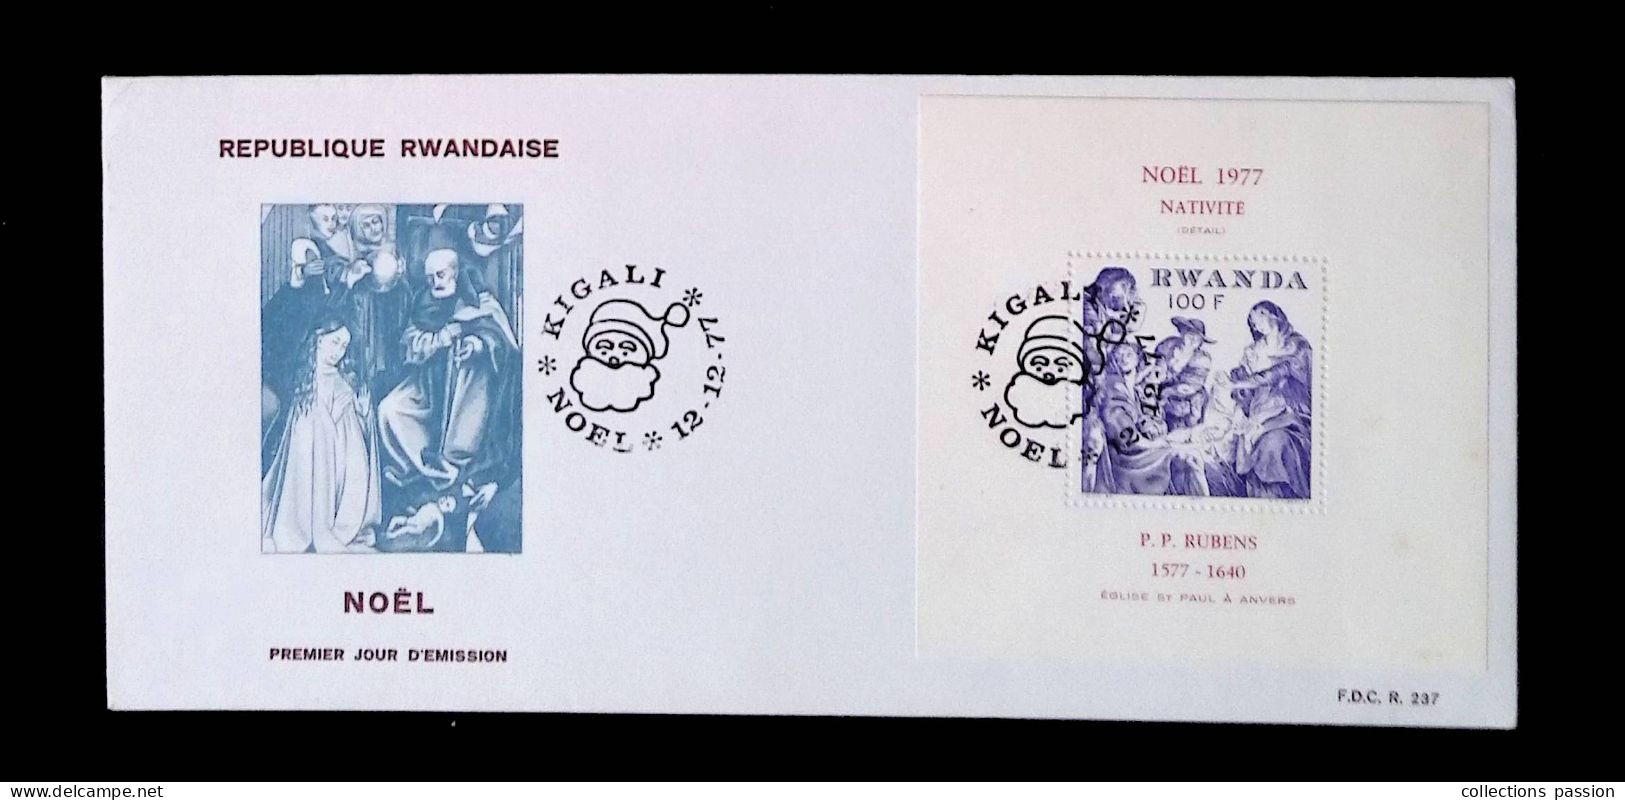 CL, FDC, Premier Jour, République Rwandaise, Rwanda, Kigali, 12-12-1977, Noël, Nativité, Rubens, Bloc, Frais Fr 1.95e - 1970-1979